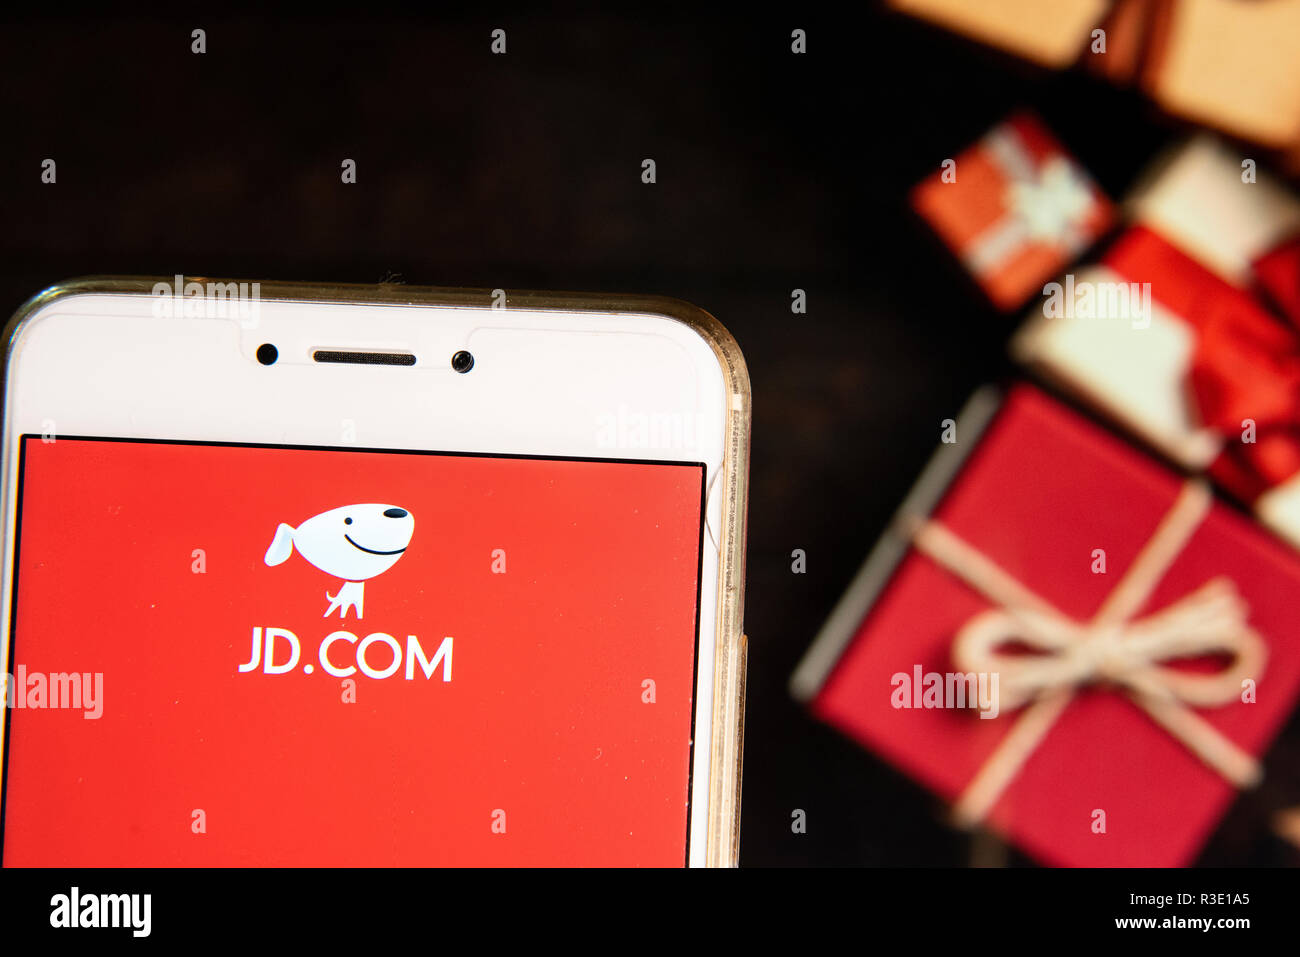 American Chinese azienda di e-commerce JD.com logo è visibile su un androide dispositivo mobile con un Natale regali avvolti in background. Foto Stock